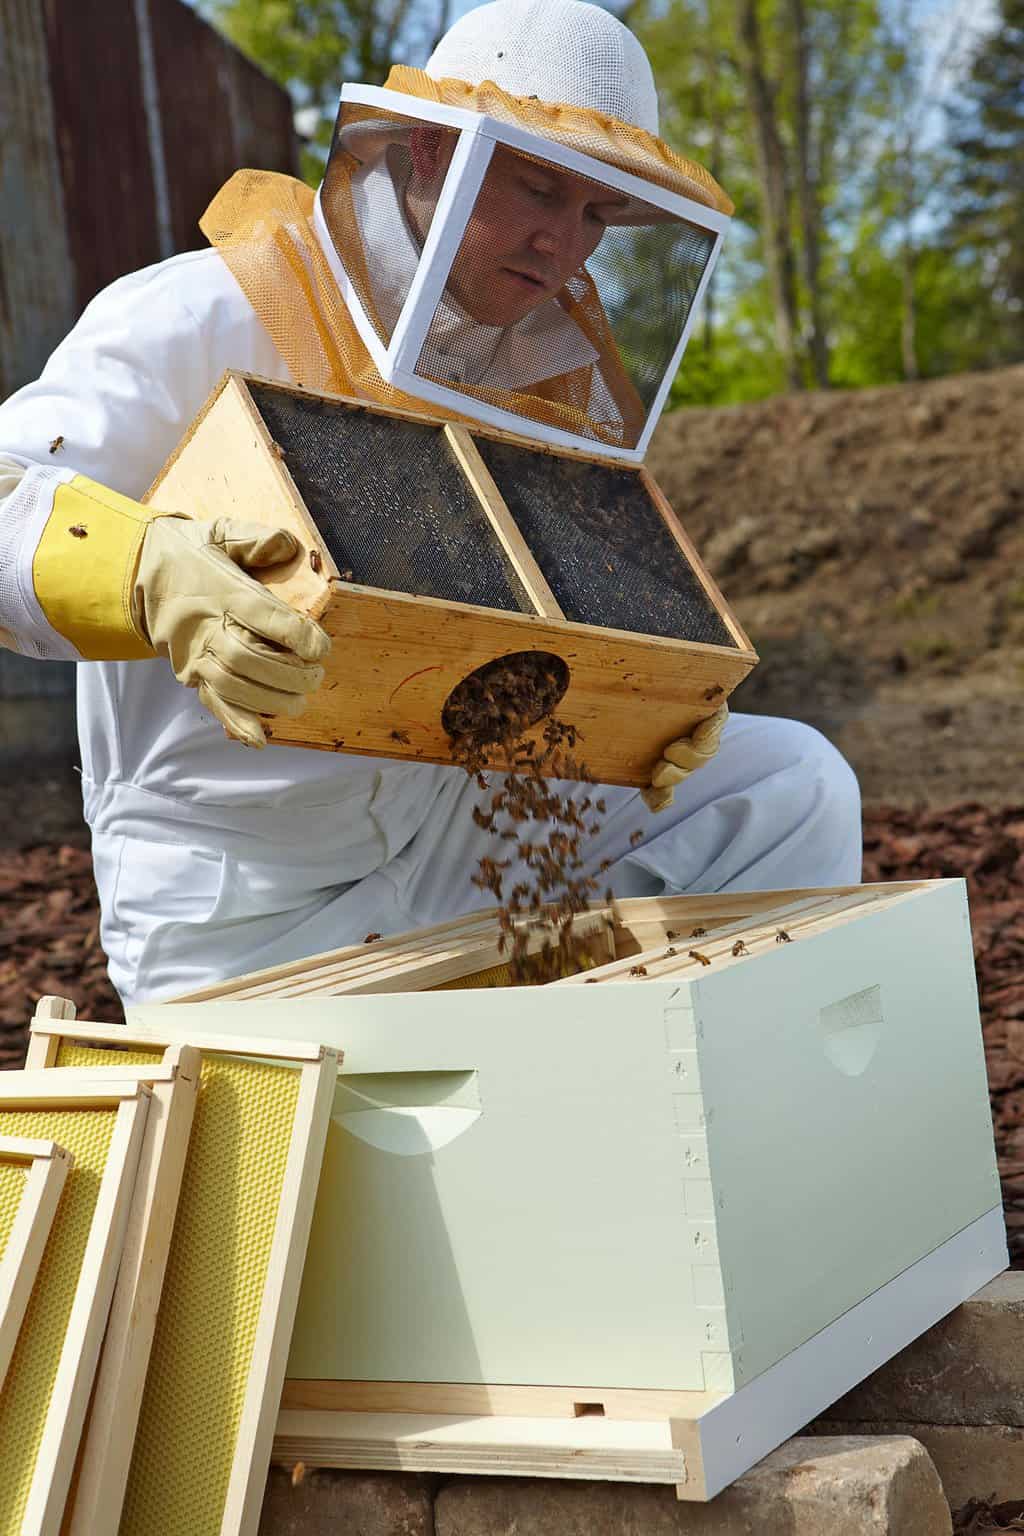 Preparing The Hive